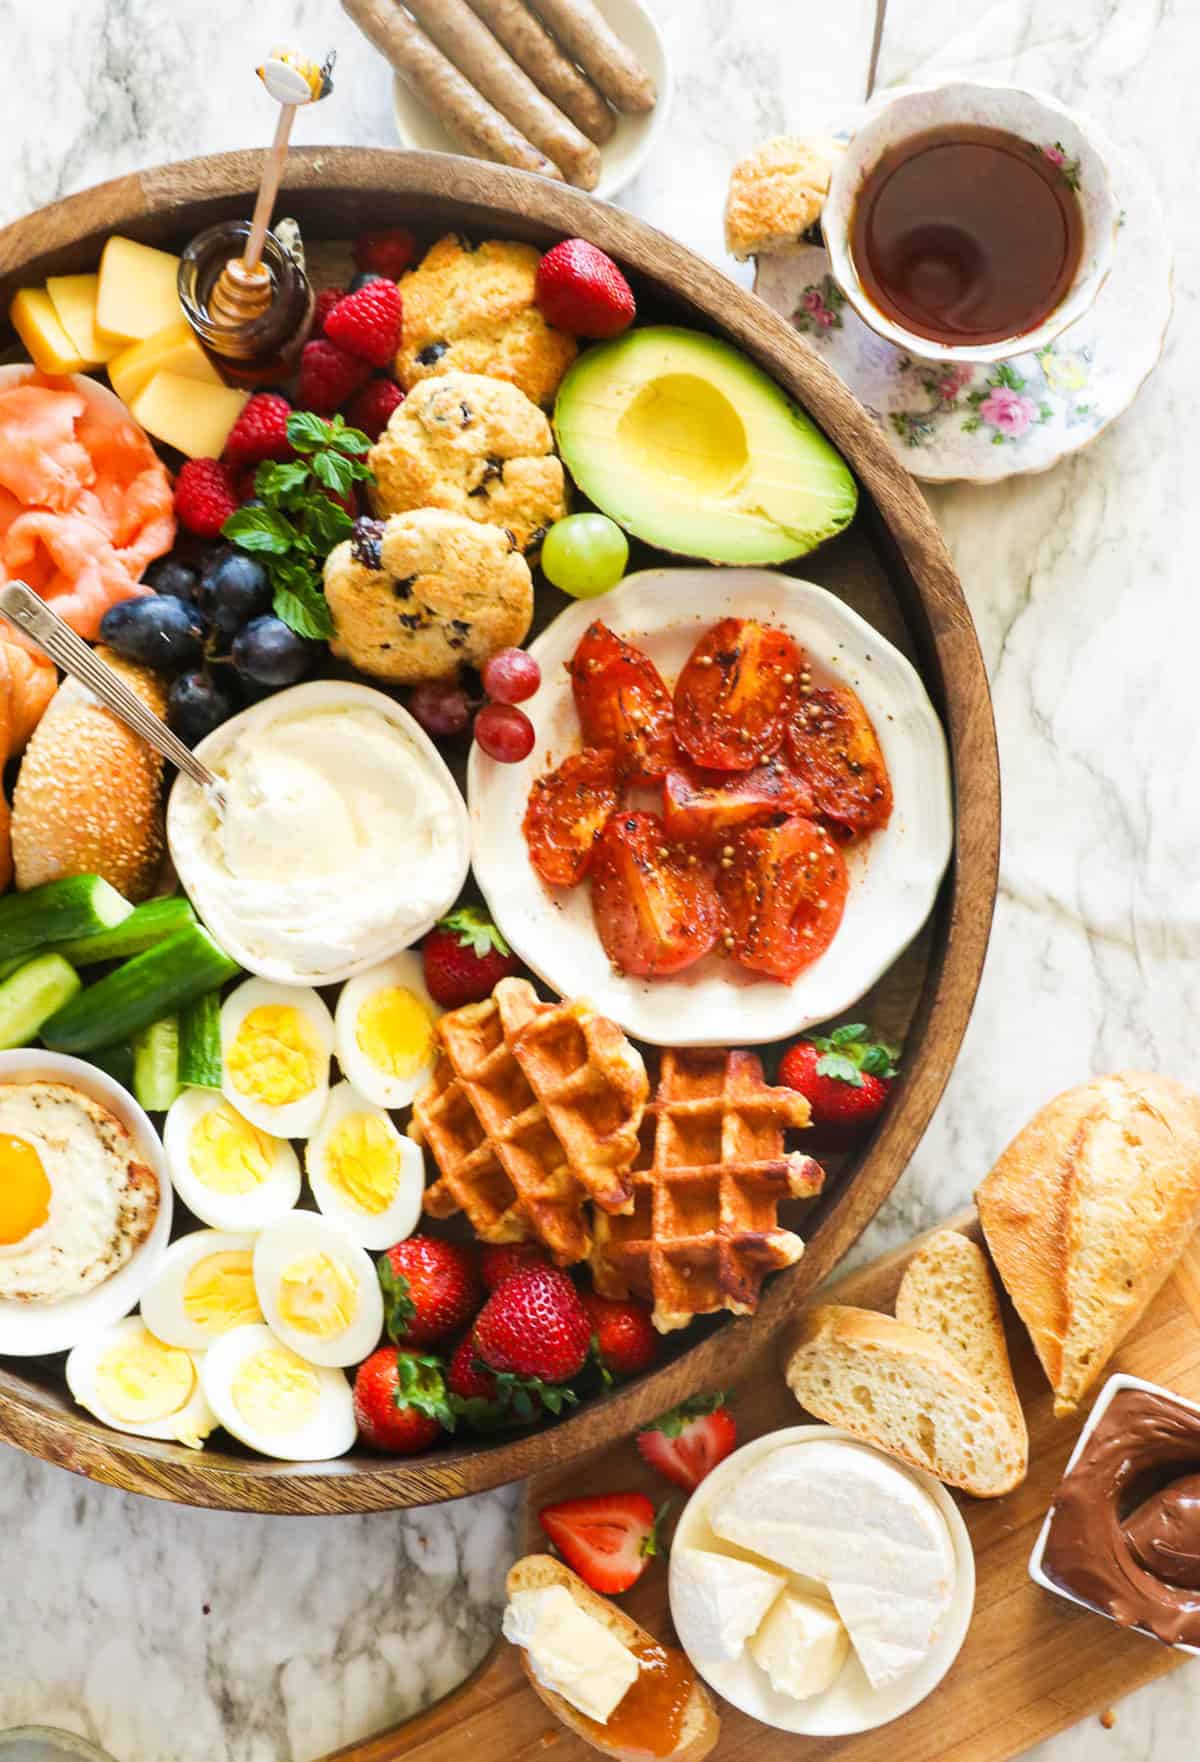 Best breakfast charcuterie board ideas for family gatherings